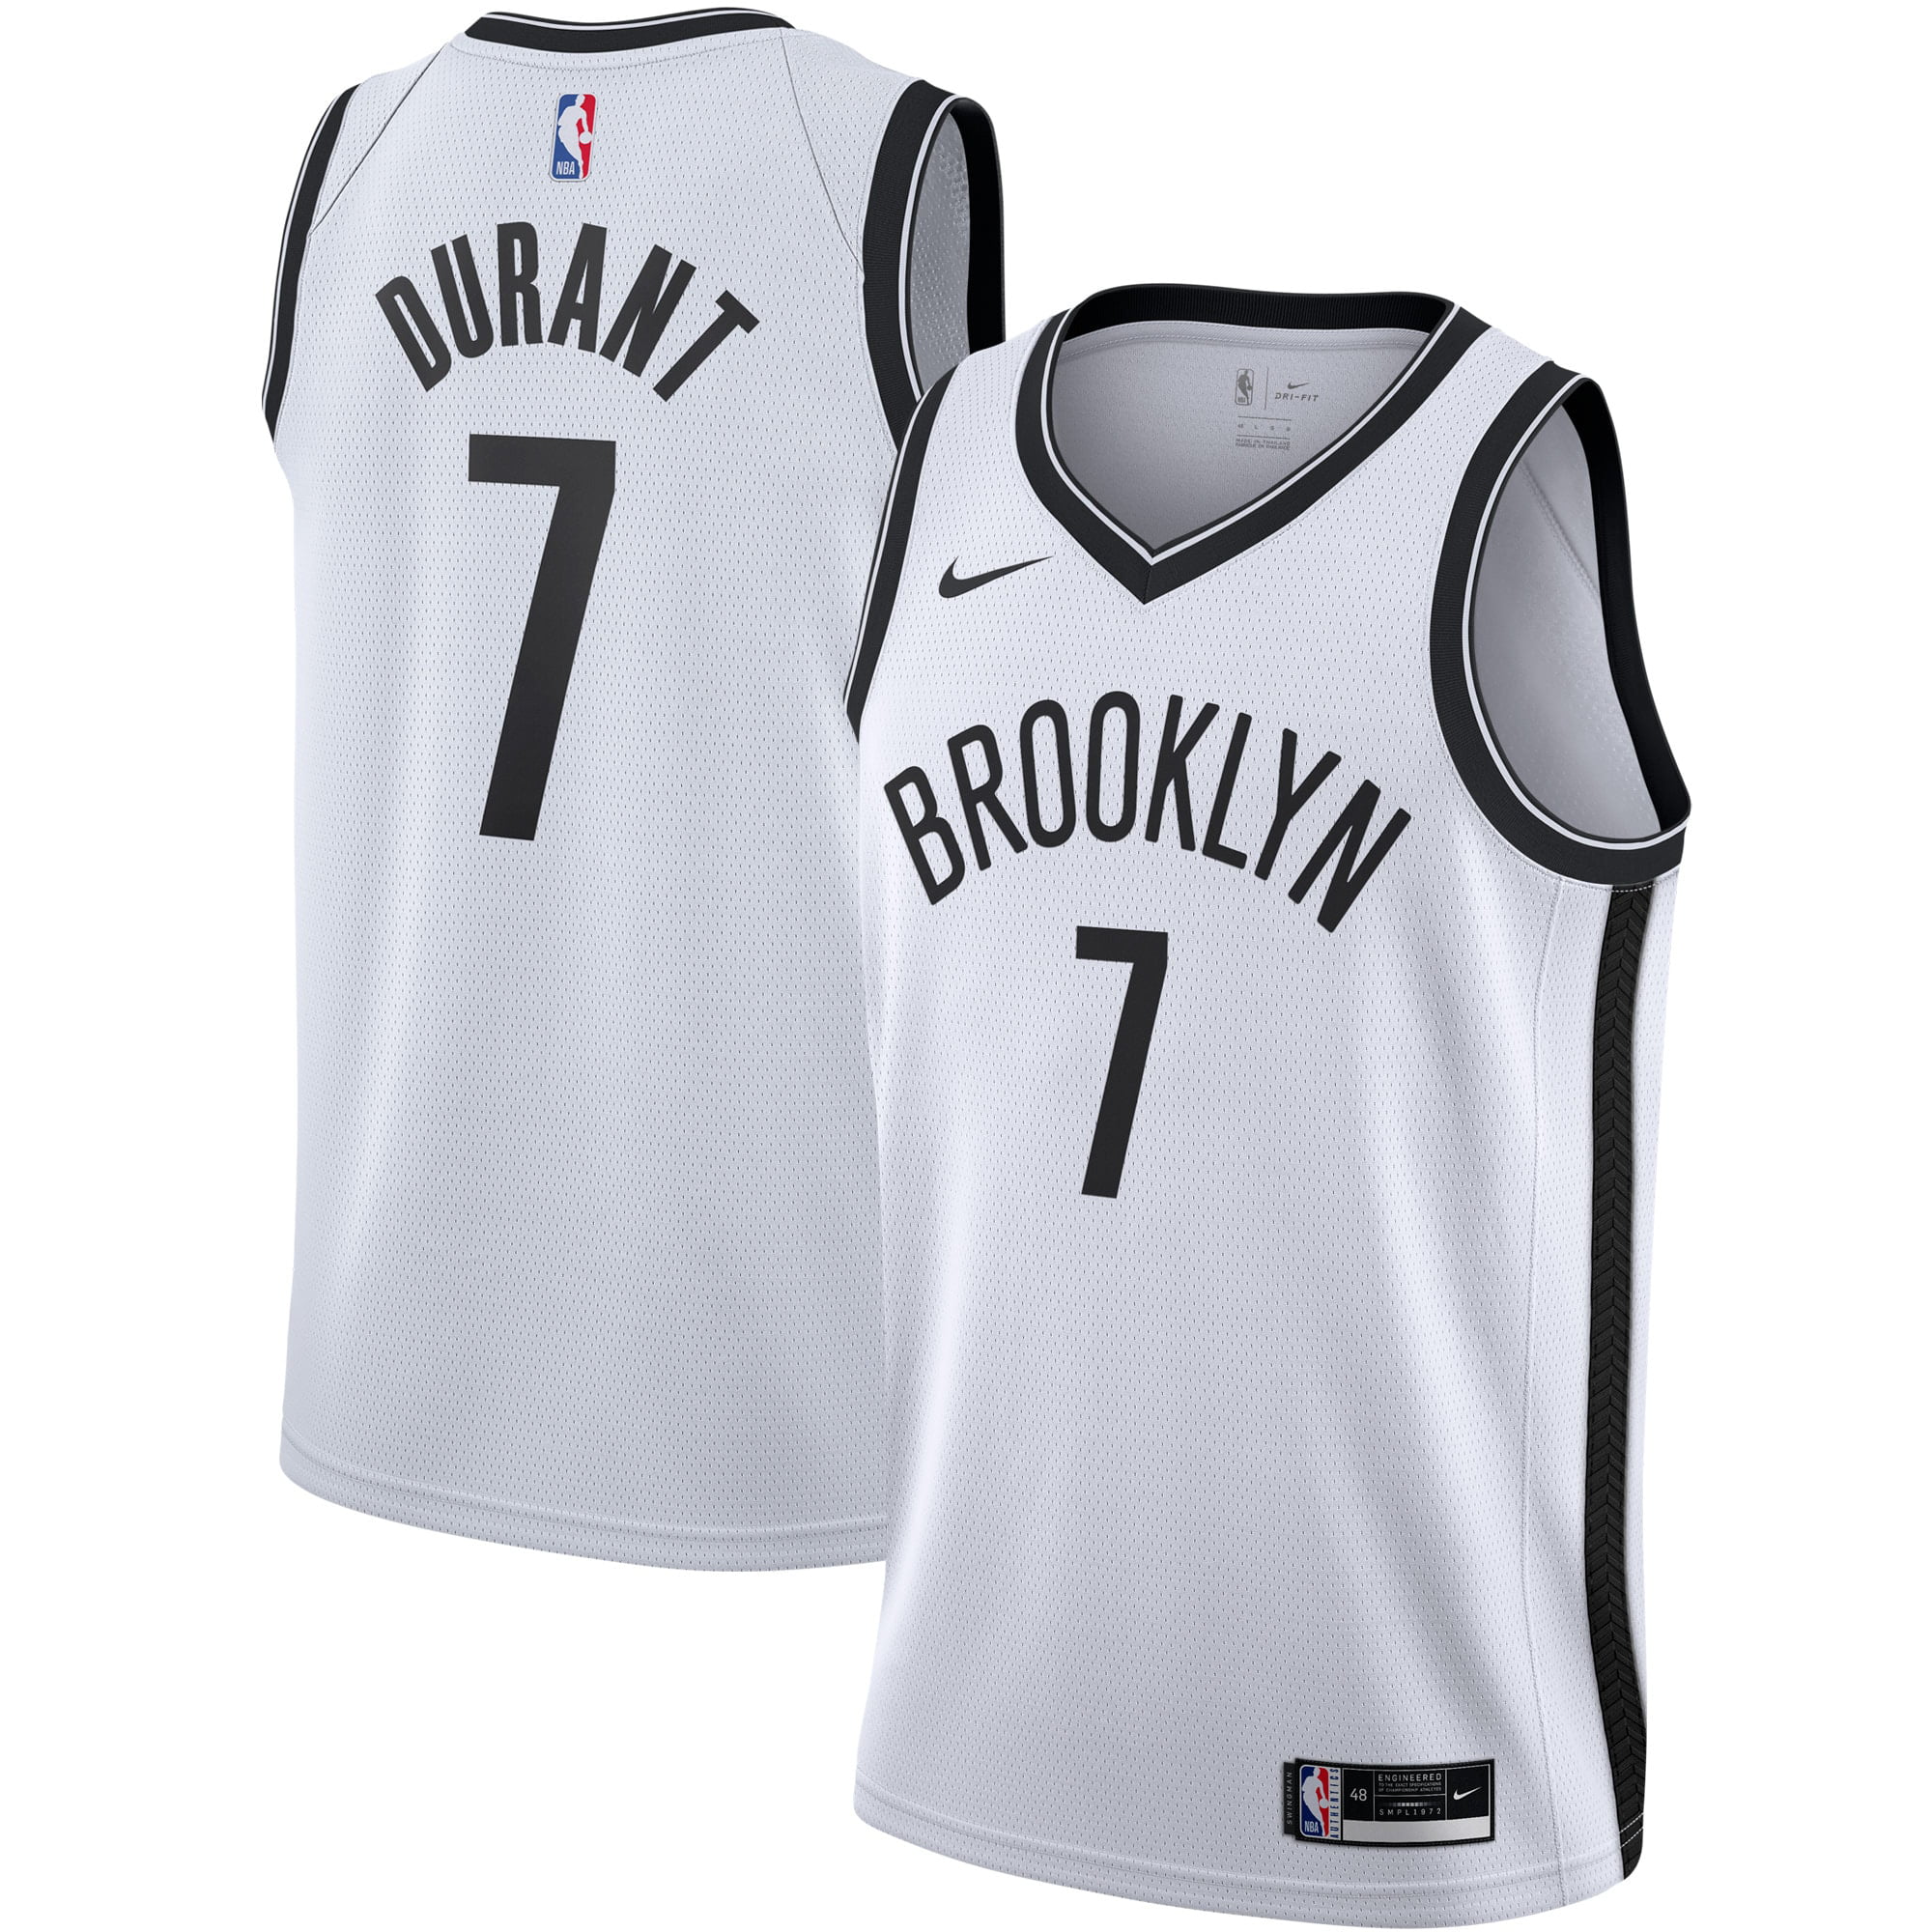 î€€Kevinî€ î€€Durantî€ Brooklyn Nets Nike 2020/21 Swingman î€€Jerseyî€ - White - Association Edition - Walmart ...